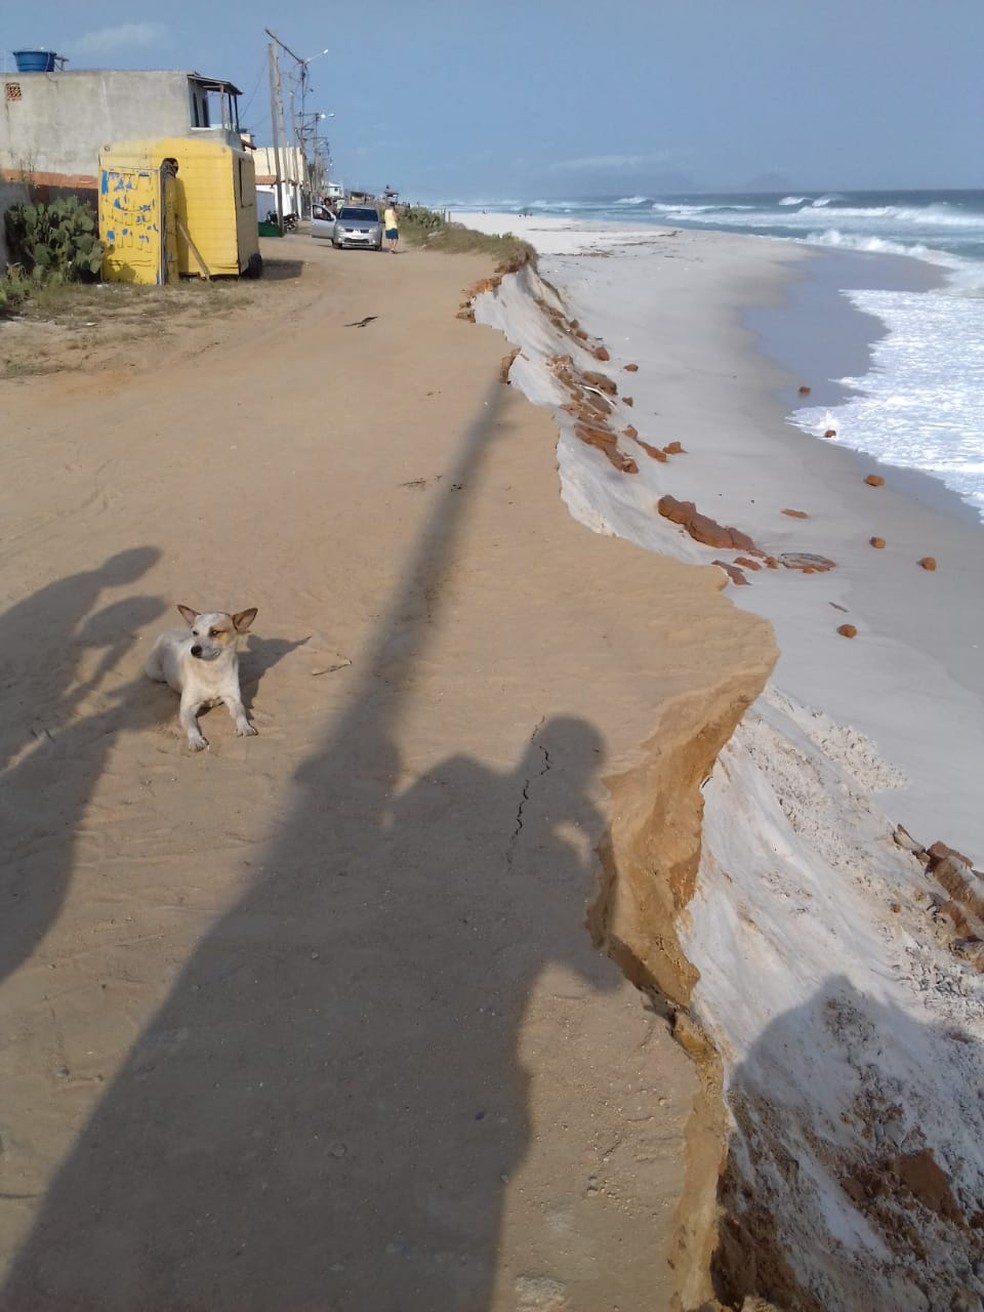 Mar avança e Defesa Civil interdita 13 casas em Arraial do Cabo, no RJ — Foto: Internauta/Arquivo pessoal